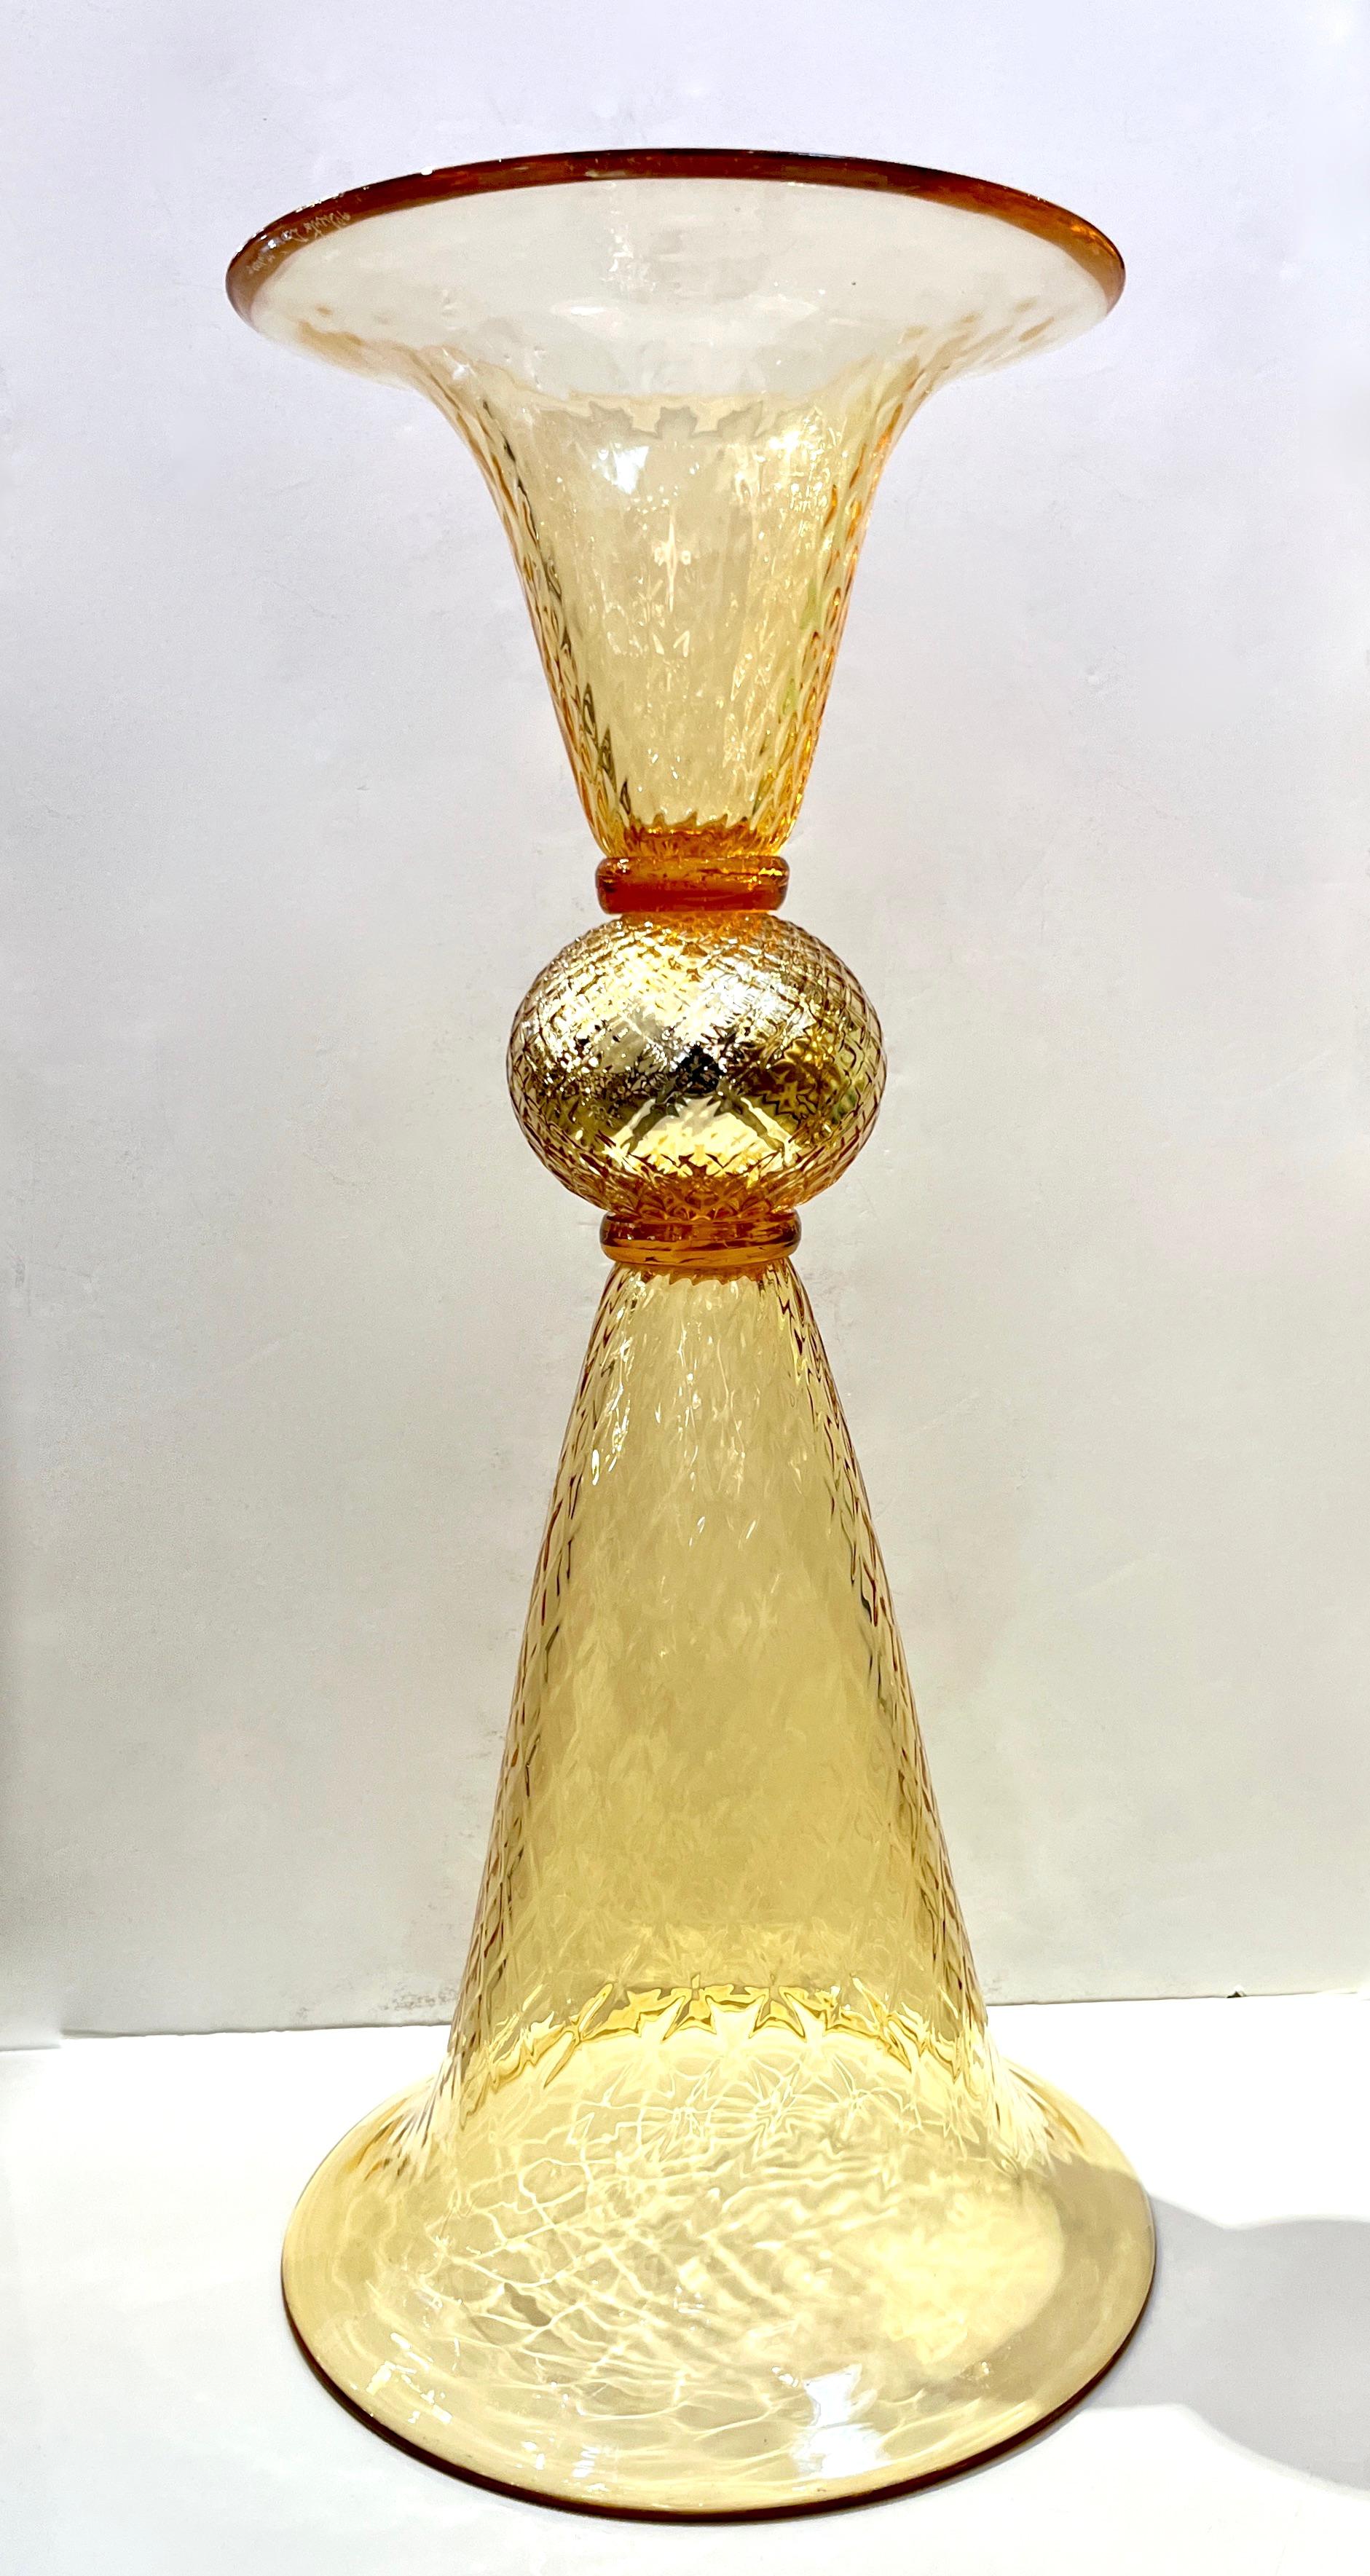 Zeitgenössische venezianische Goldvase aus mundgeblasenem Murano-Glas, bearbeitet mit reinem 24-karätigem Gold, ein Teil ist länglicher als der andere und beide können als Sockel dienen. Die Gehäuse bestehen beide aus strukturiertem Glas mit einem